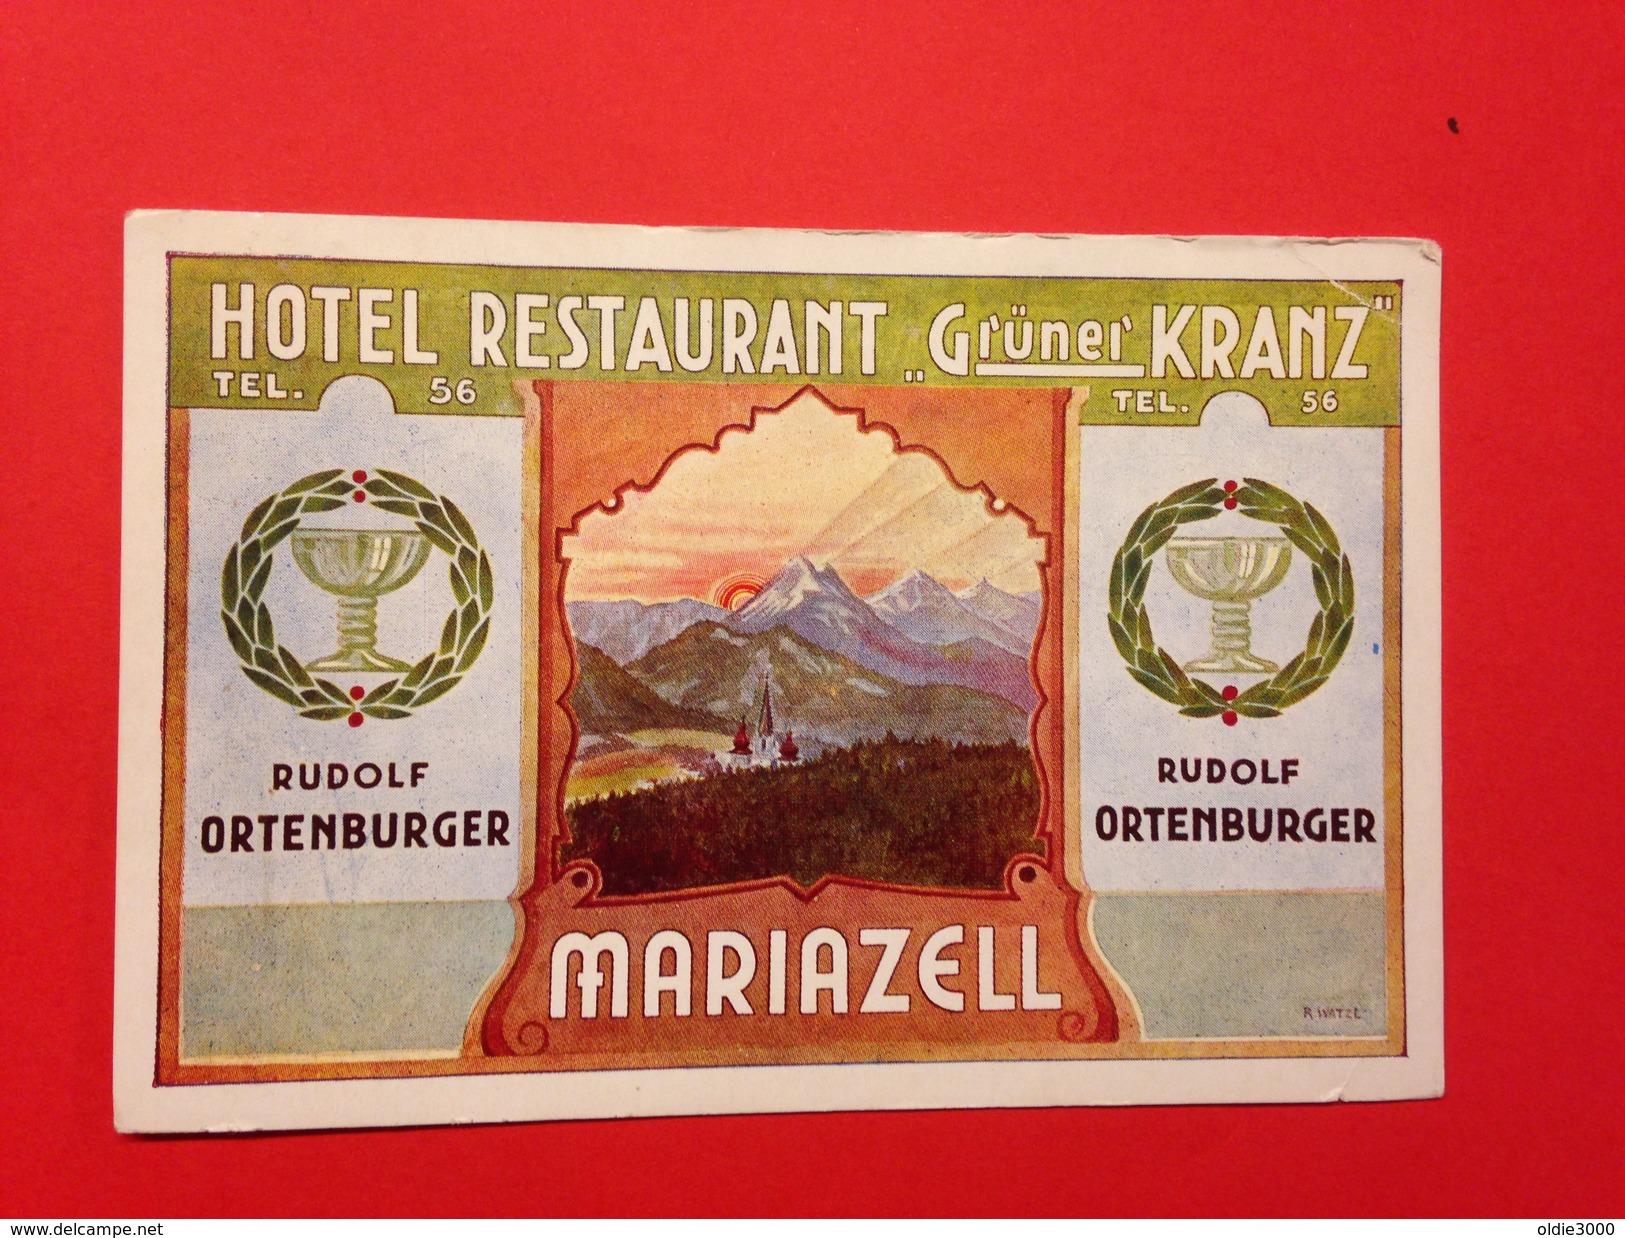 Mariazell 290 - Mariazell